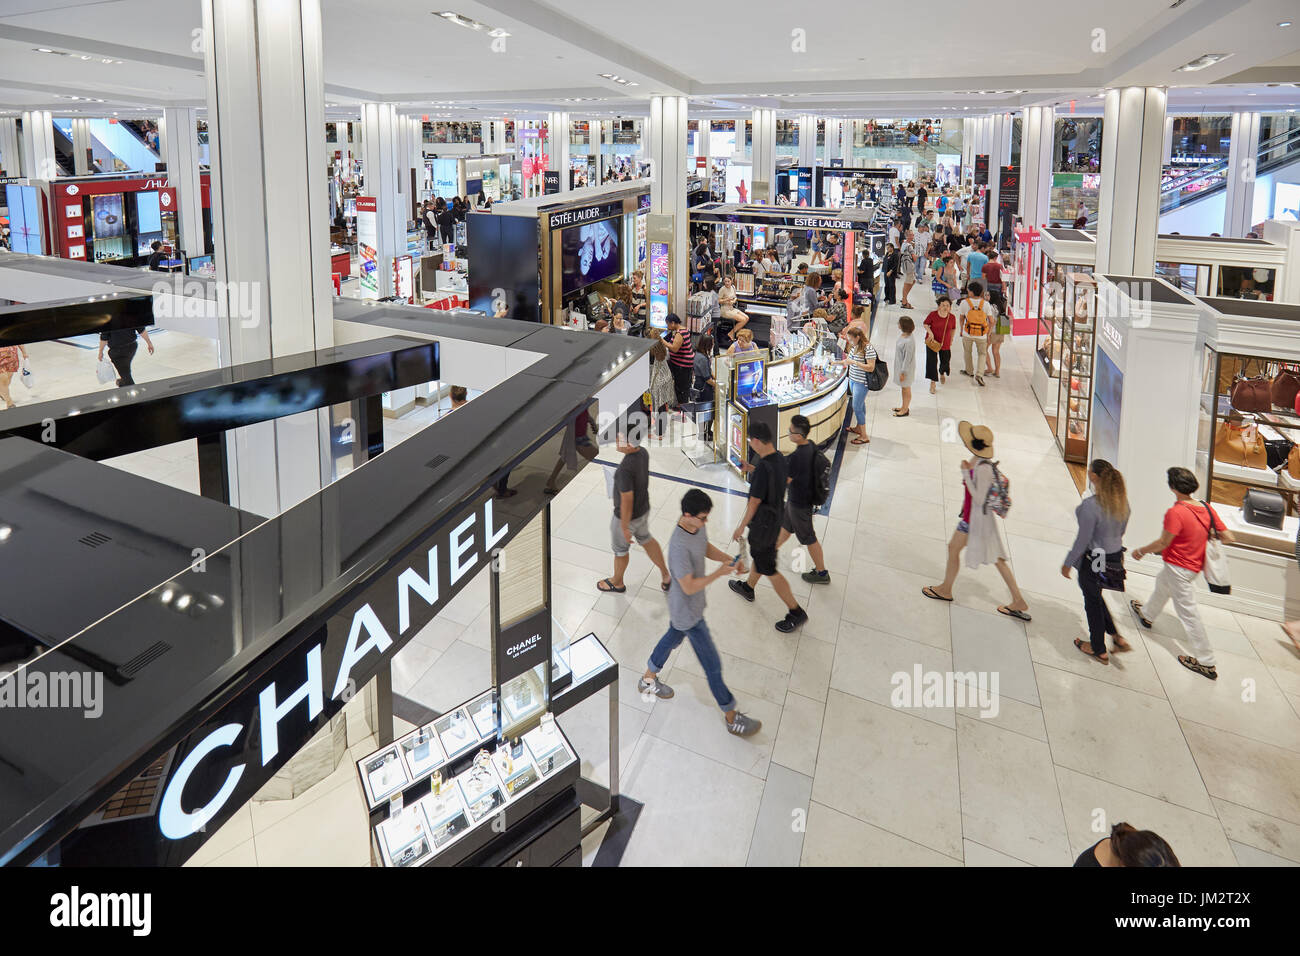 NEW YORK - 10 settembre: magazzino Macy's interno, area cosmetica con Chanel negozio il 10 settembre 2016 a New York. Macy è più grandi DEGLI STATI UNITI Foto Stock